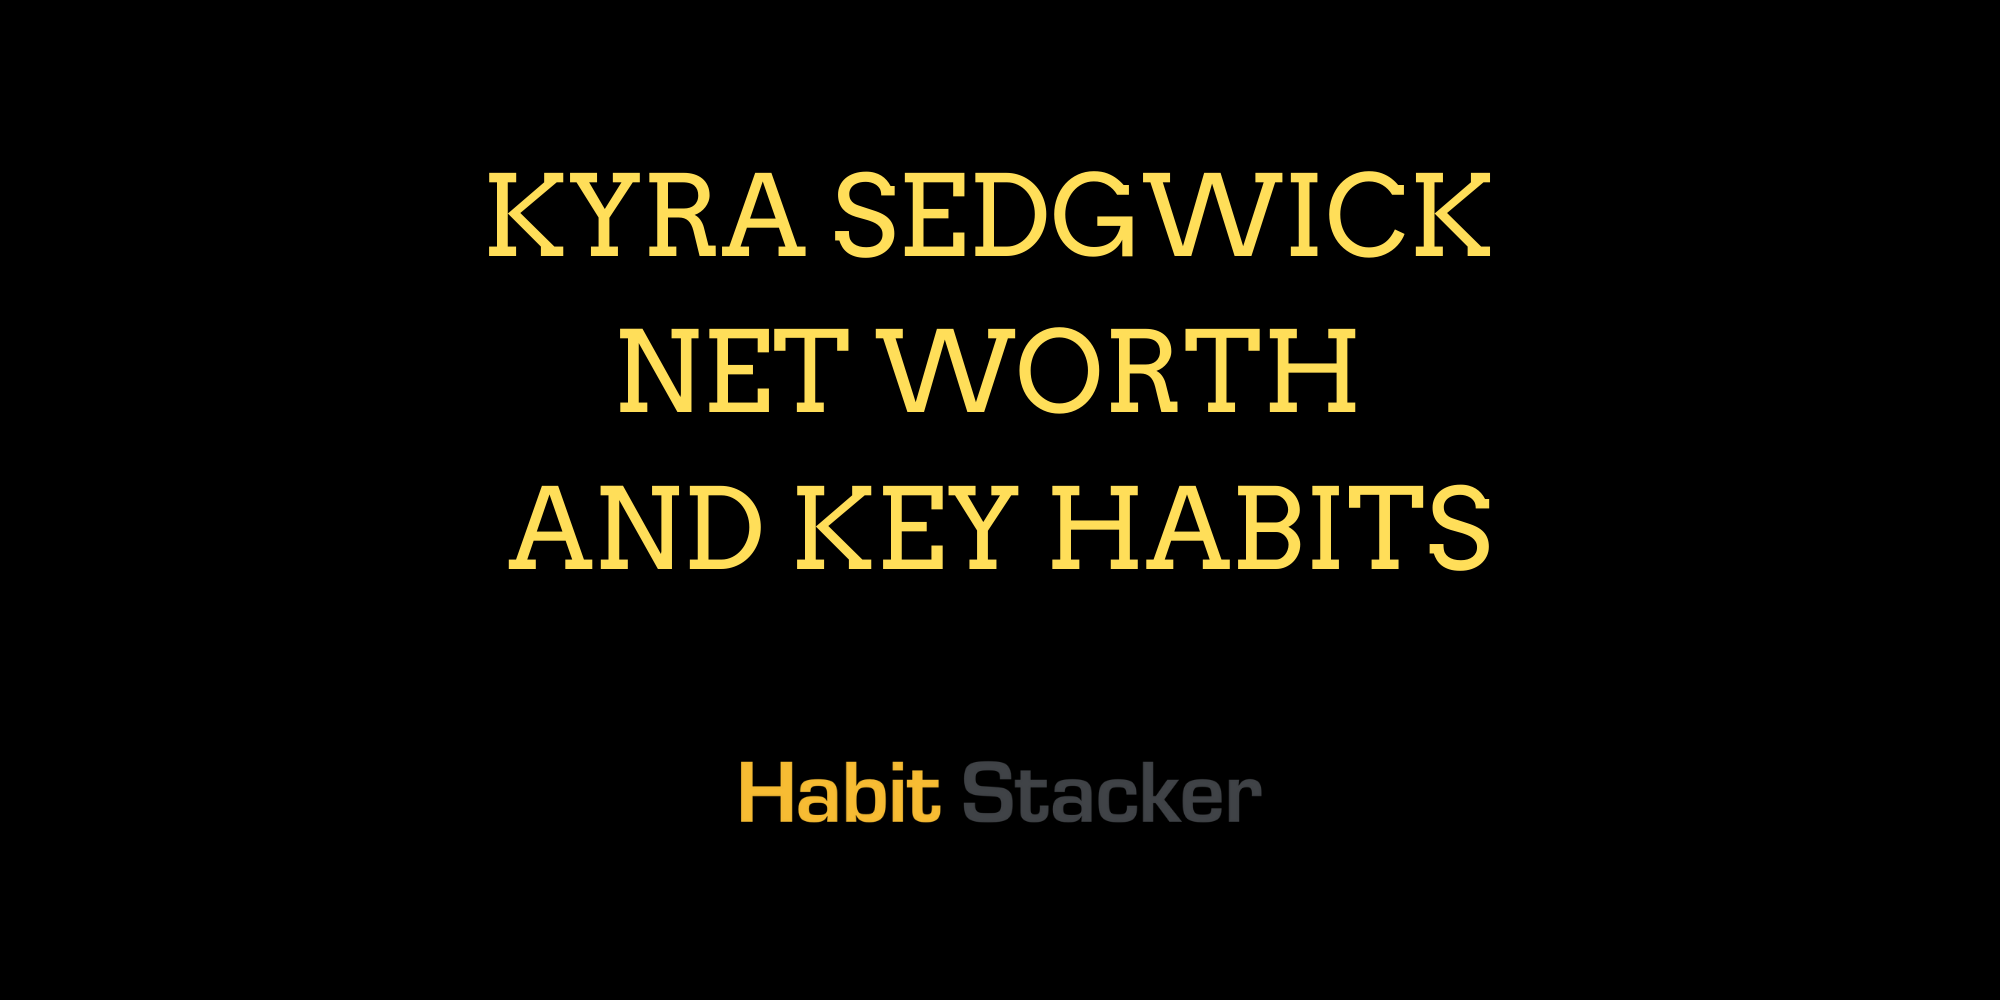 Kyra Sedgwick Net Worth and Key Habits